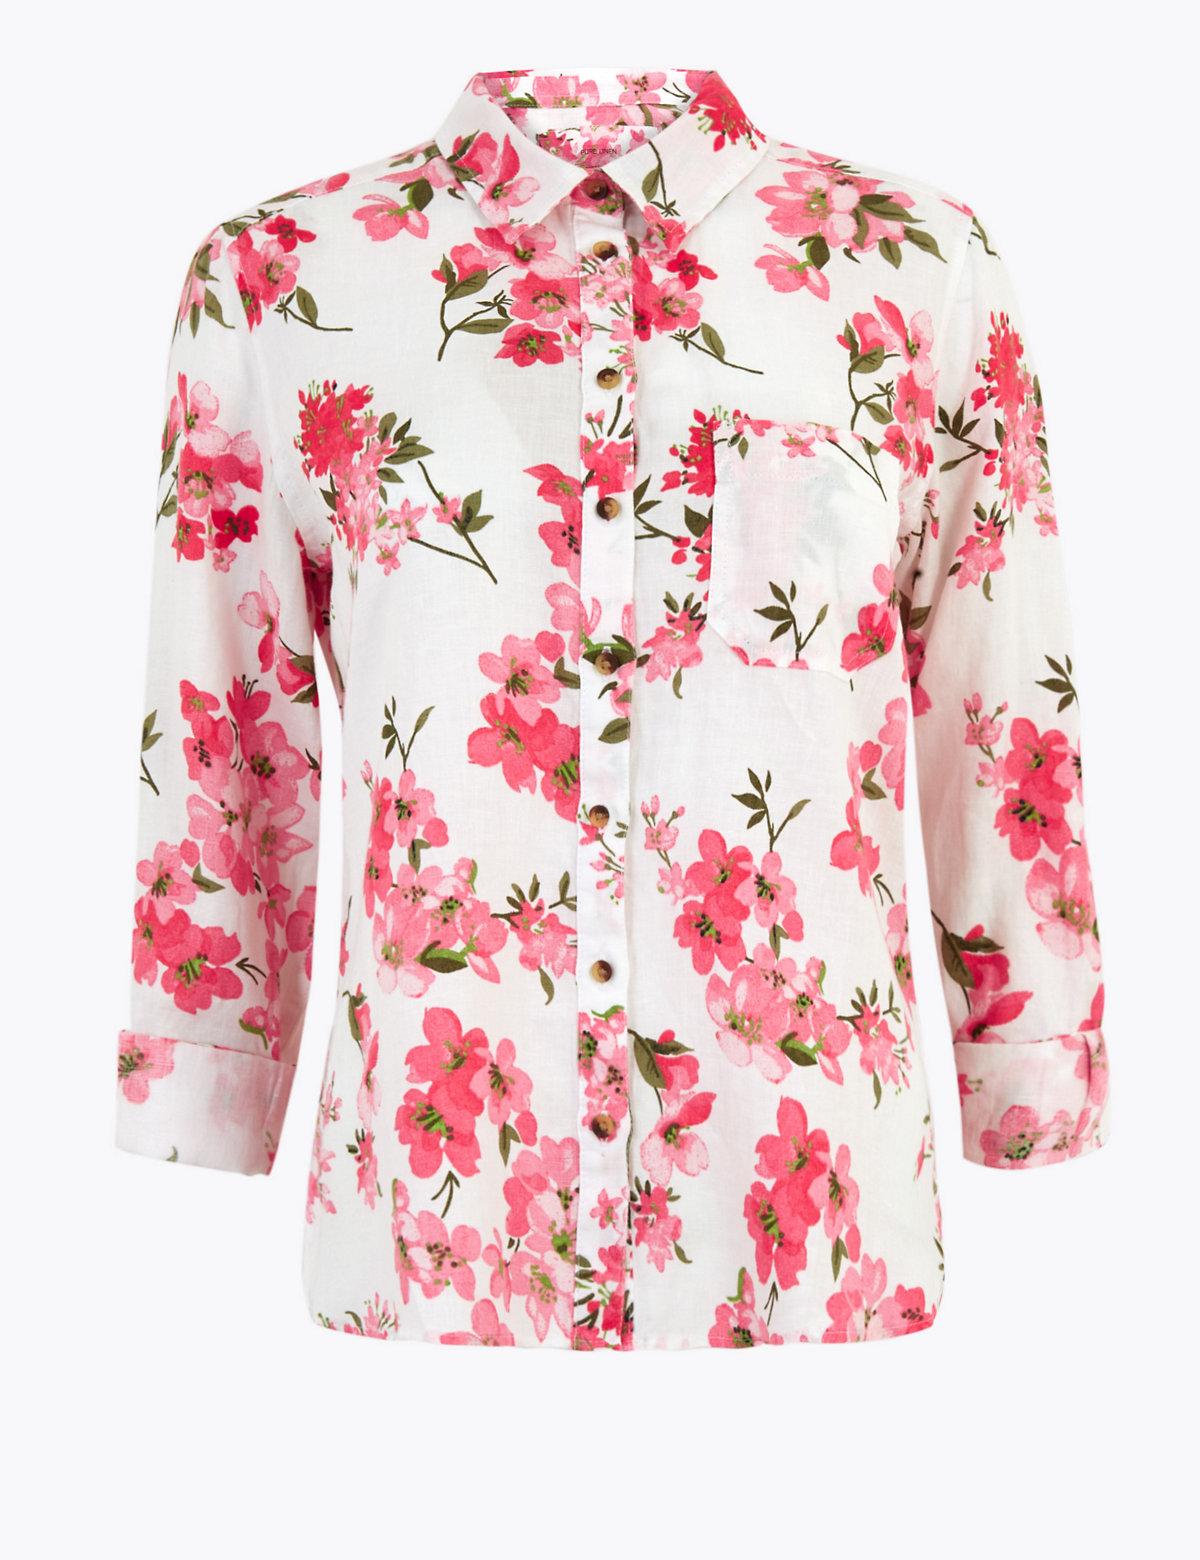 Pure Linen Floral Long Sleeve Shirt